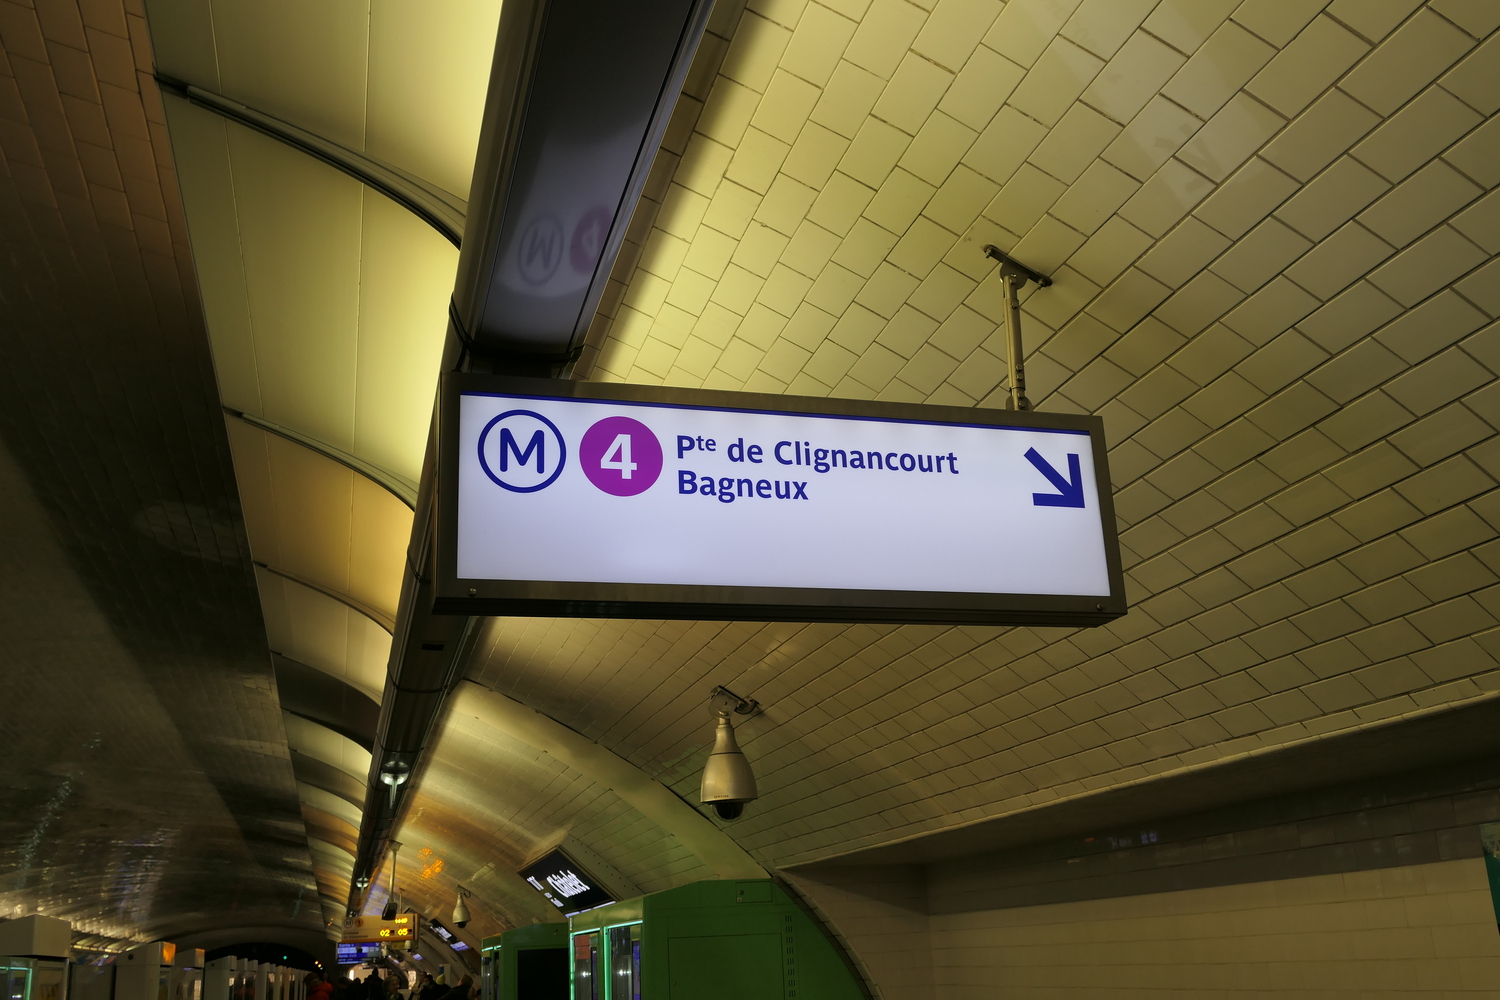 La journaliste change de train à Châtelet pour prendre la ligne 4 jusqu’à Saint-Placide, c’est une coïncidence, mais c’est aussi l’arrêt de métro de l’école Littré © Globe Reporters